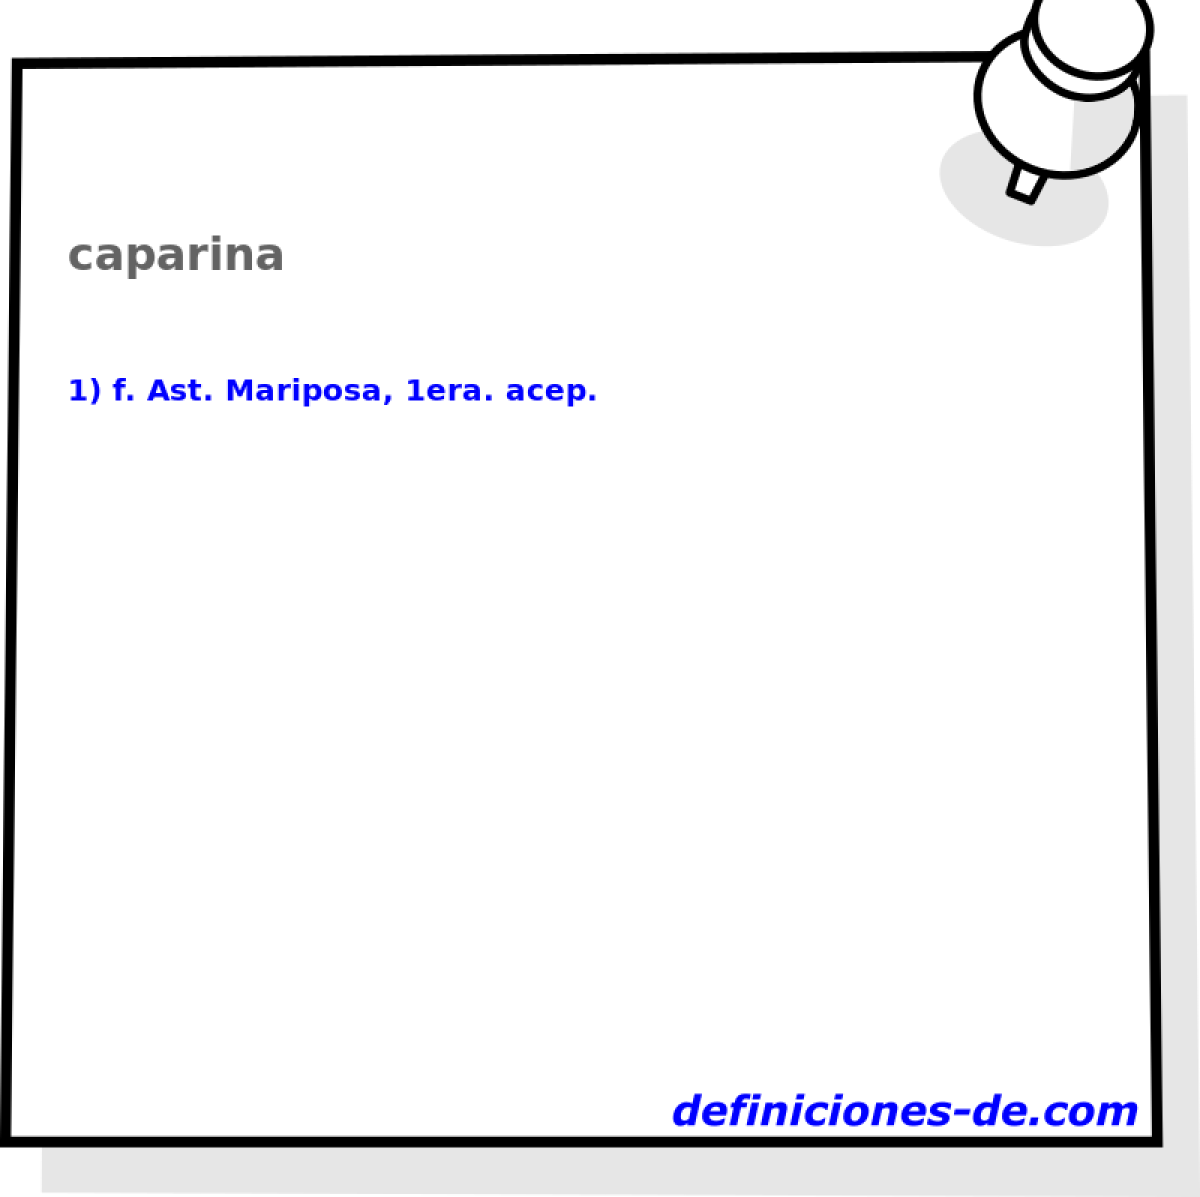 caparina 